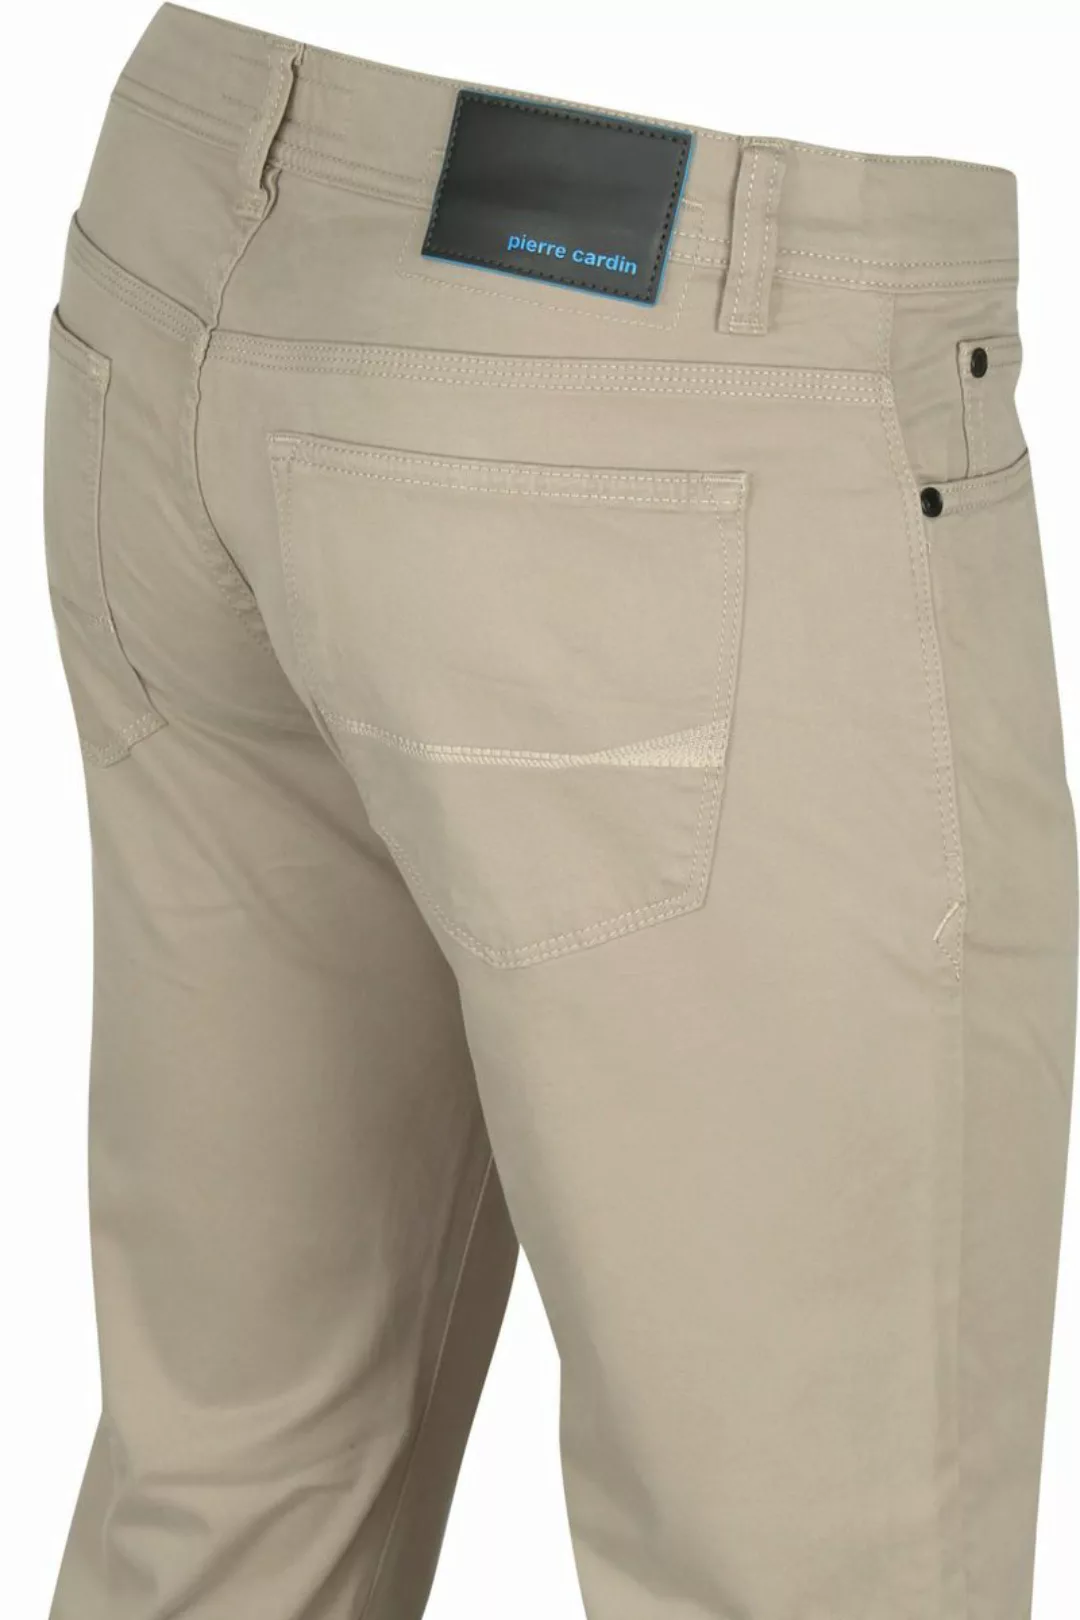 Pierre Cardin Antibes 5 Pocket Hose Khaki - Größe W 38 - L 32 günstig online kaufen